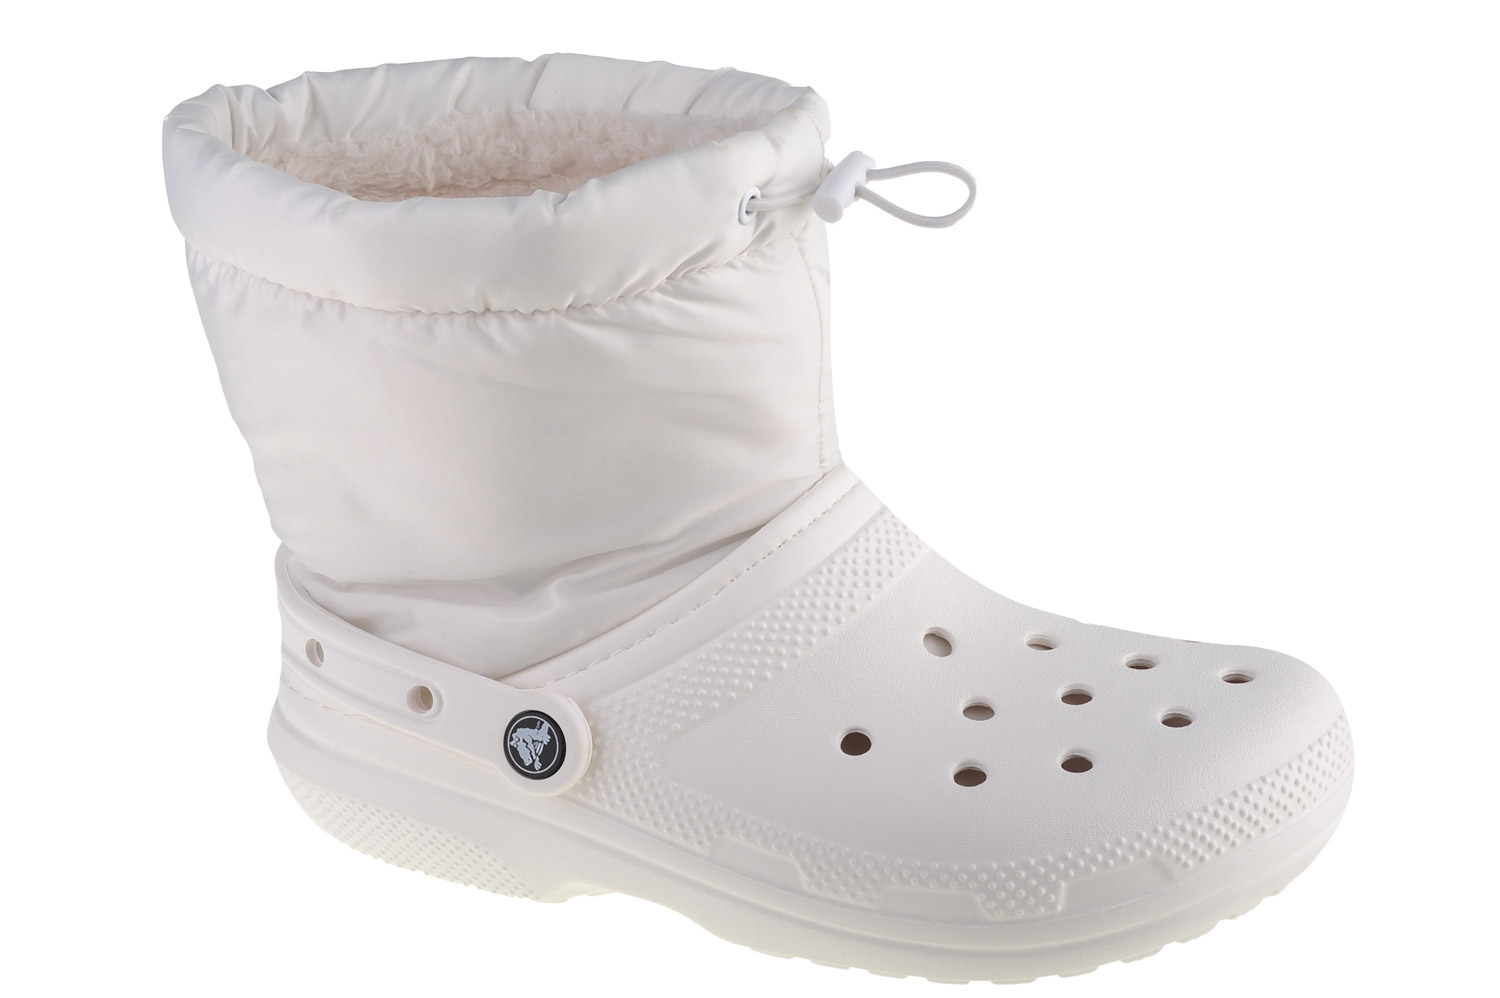 Ботинки Crocs Crocs Classic Lined Neo Puff Boot, белый ботинки classic lined neo puff boot crocs фиолетовый